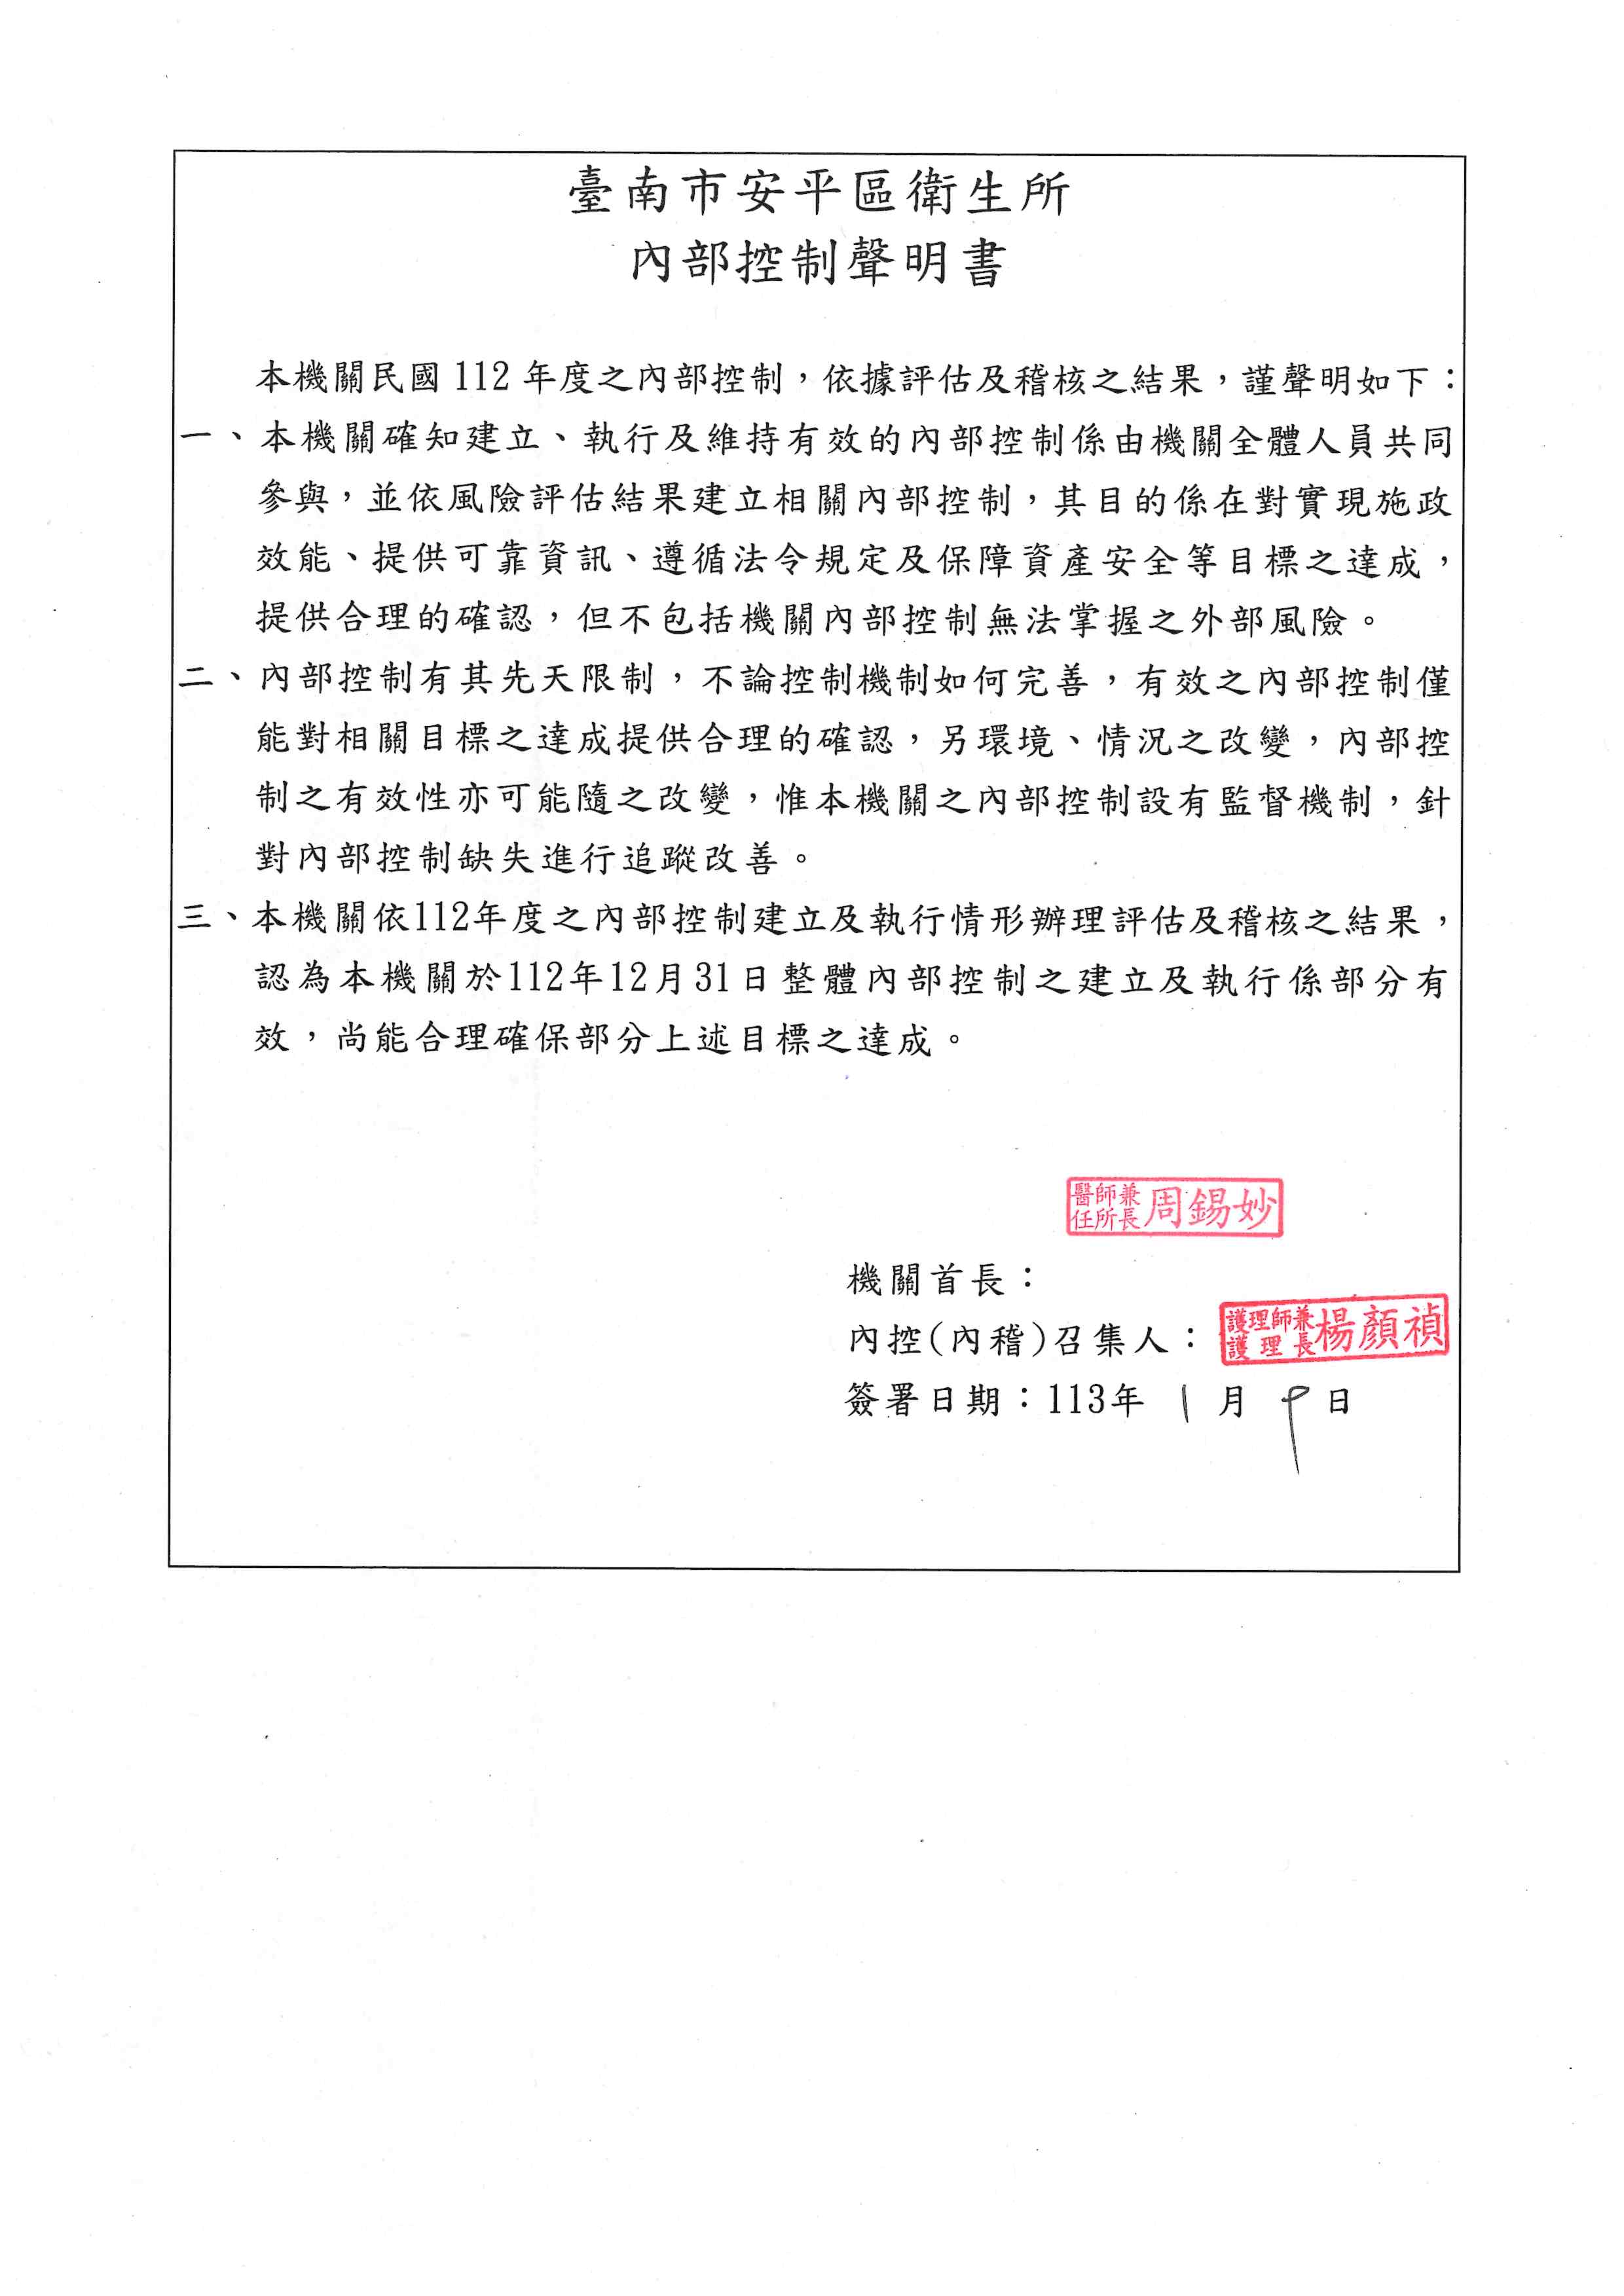 臺南市安平區衛生所112年內部控制聲明書